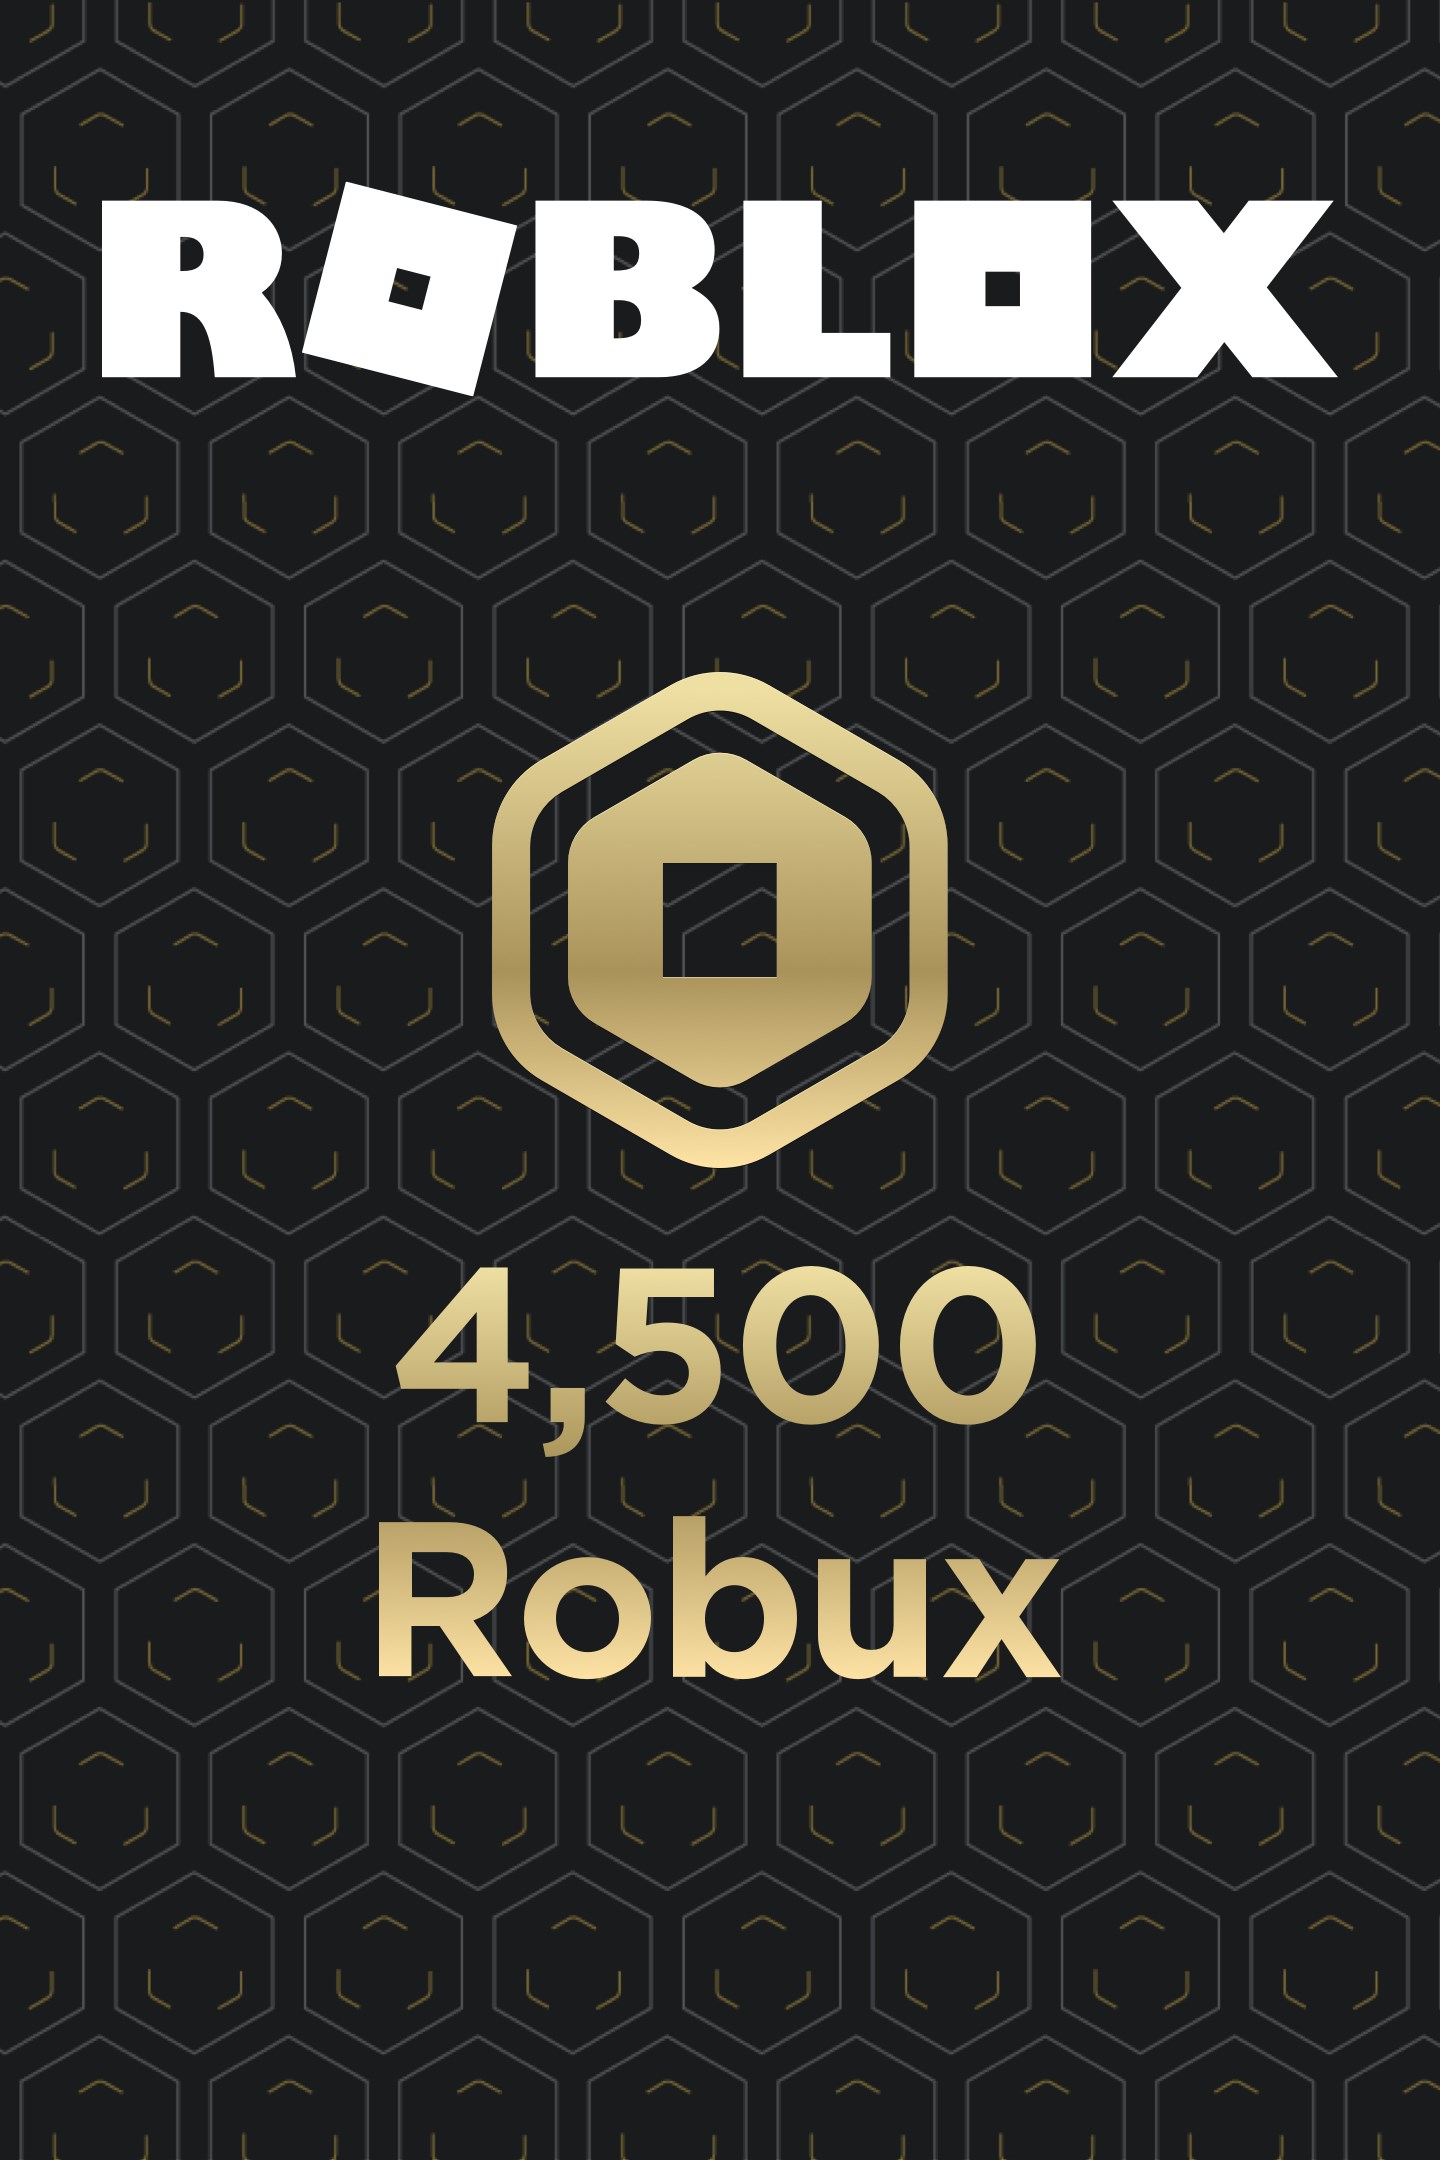 Roblox Xbox - no es un jac gana robux